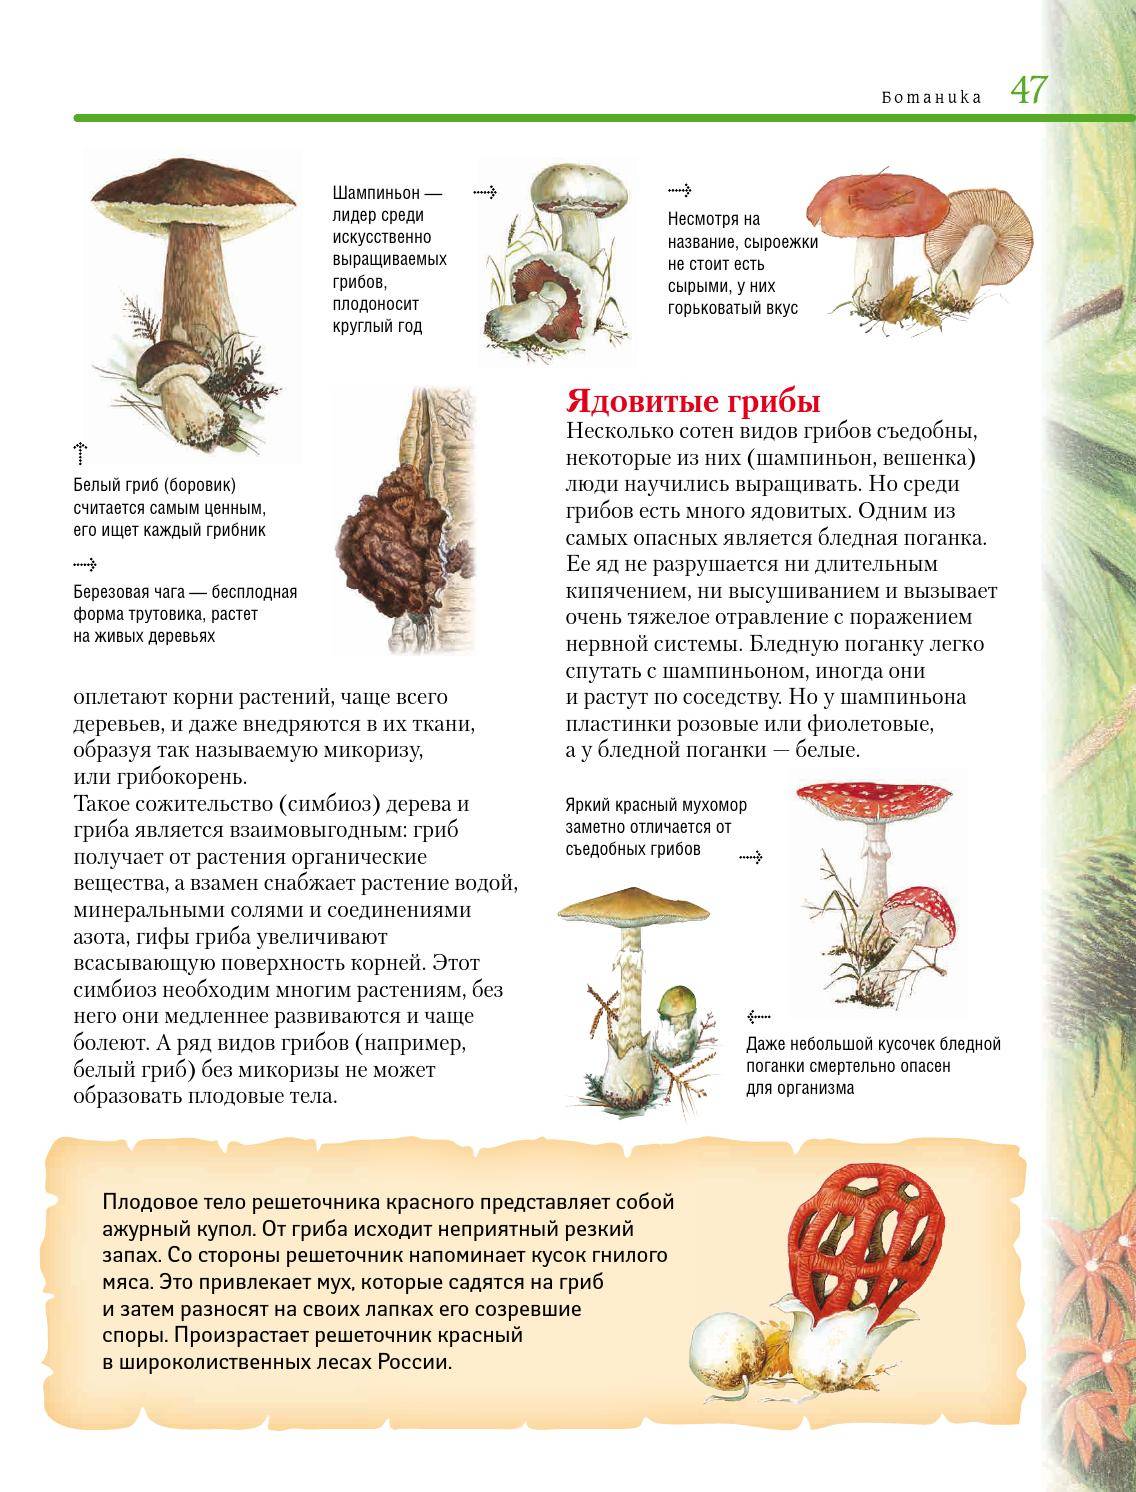 Что такое гифы: особенности строения грибов